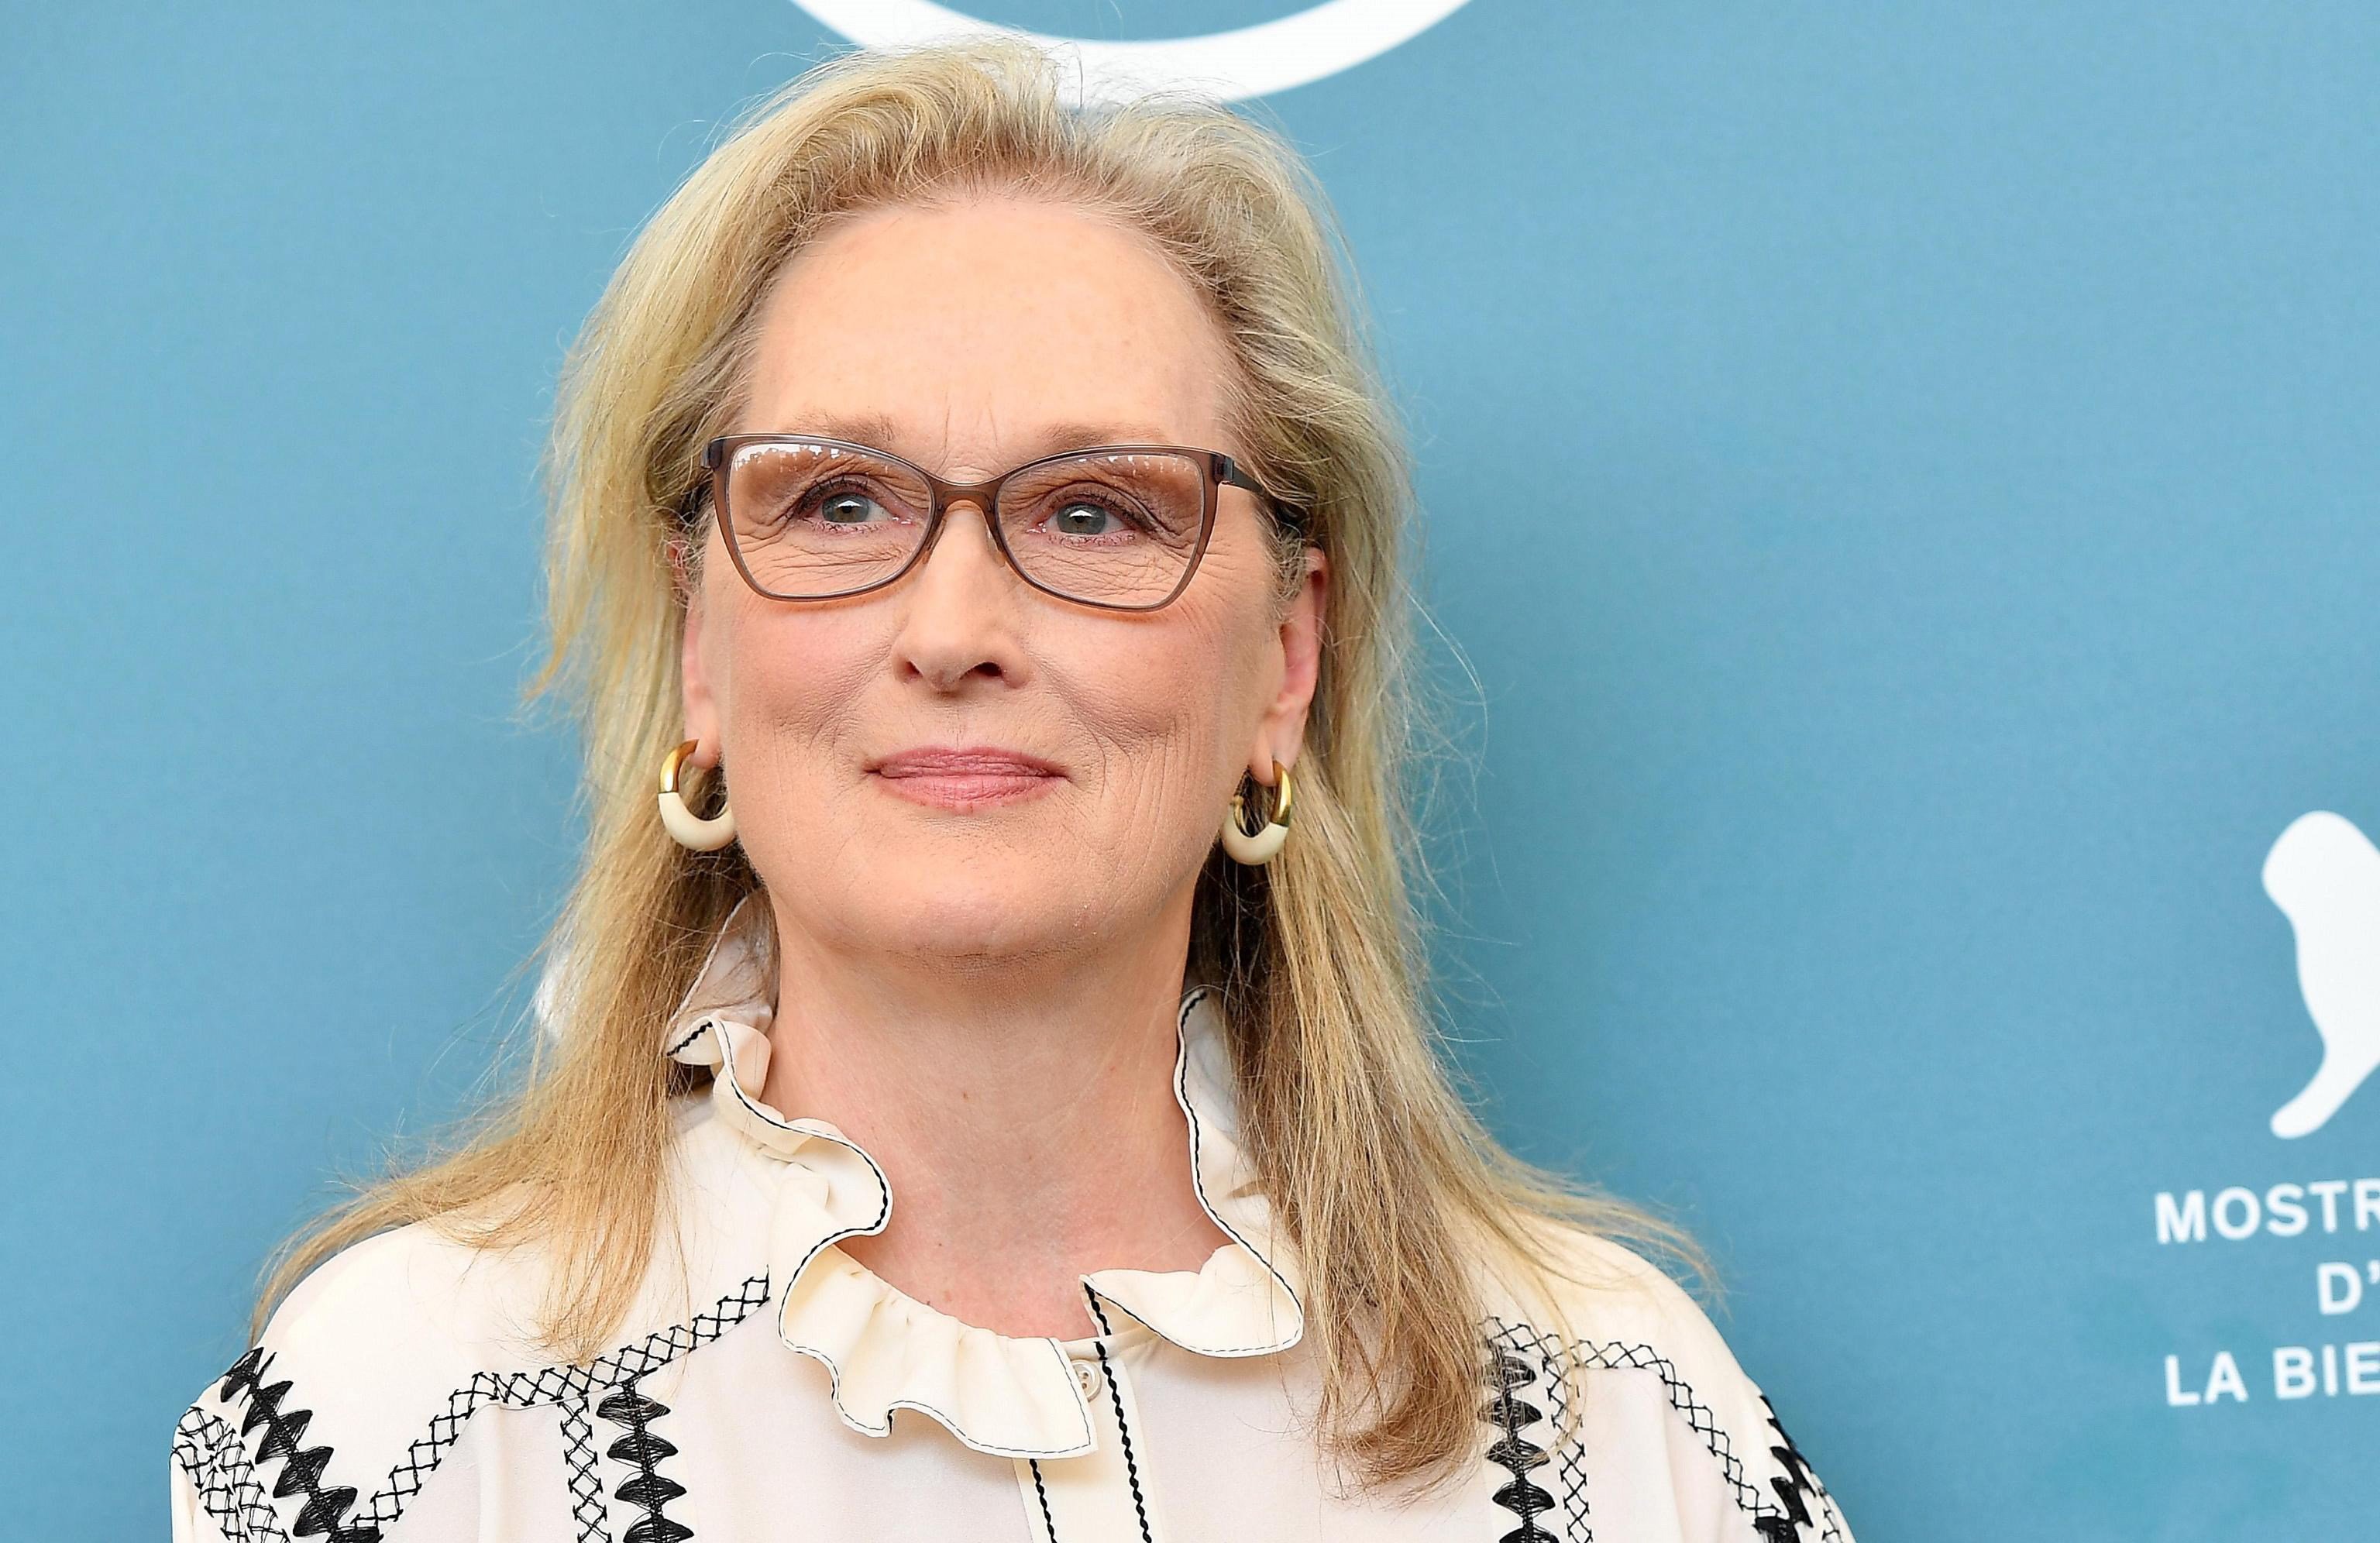 Meryl Streep canta en bata y prepara cócteles en el homenaje virtual a Sondheim